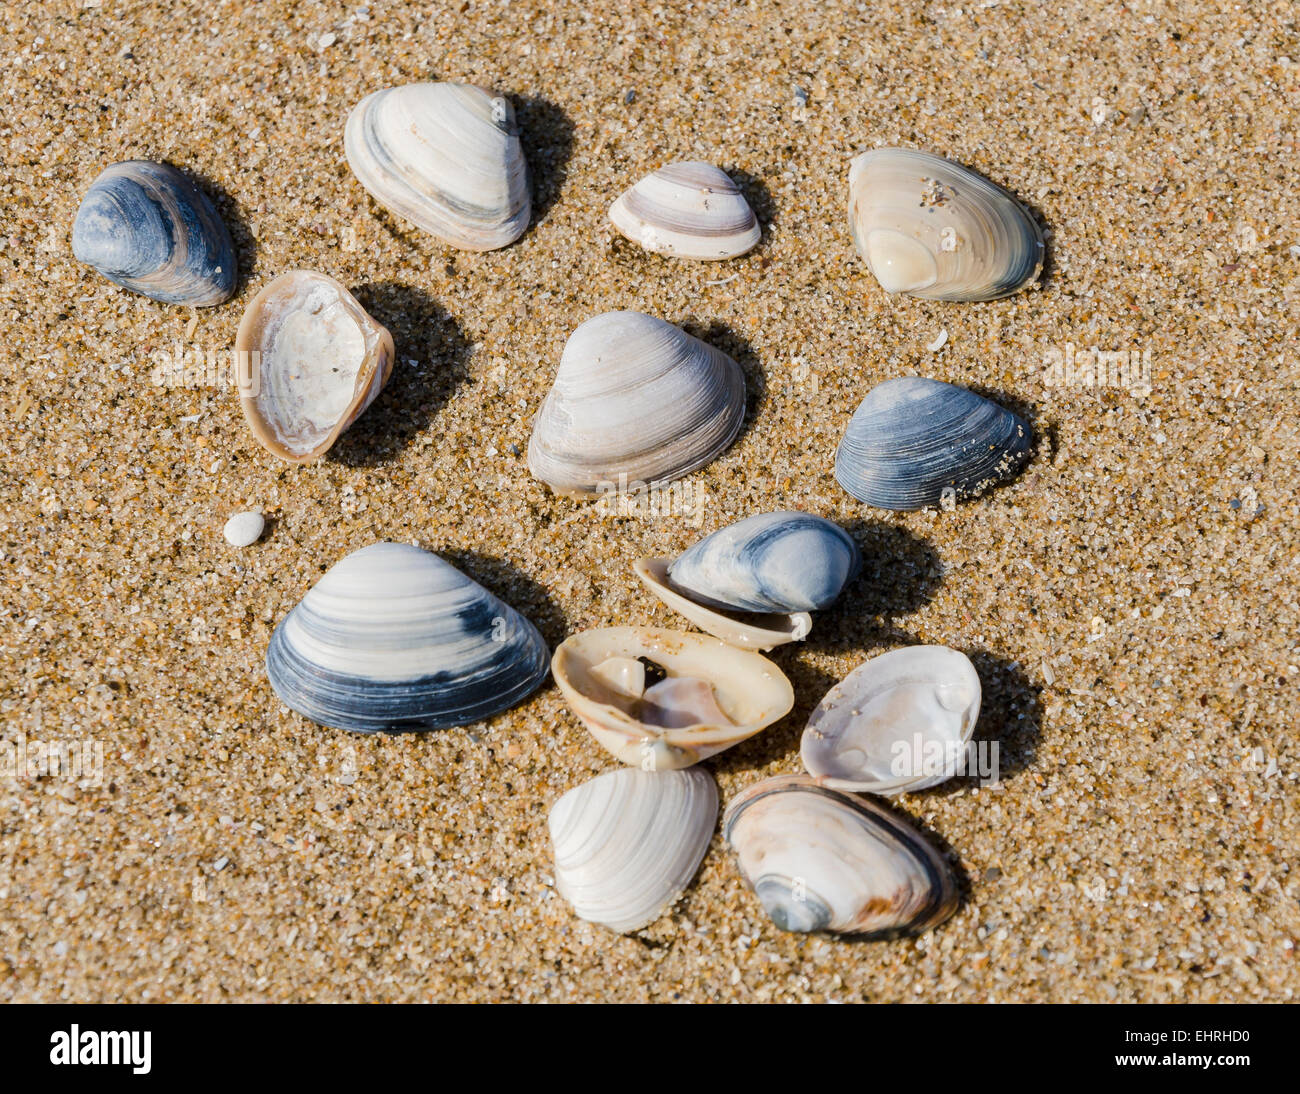 Shells on a beach in the sand near Meijendel, Wassenaar Stock Photo